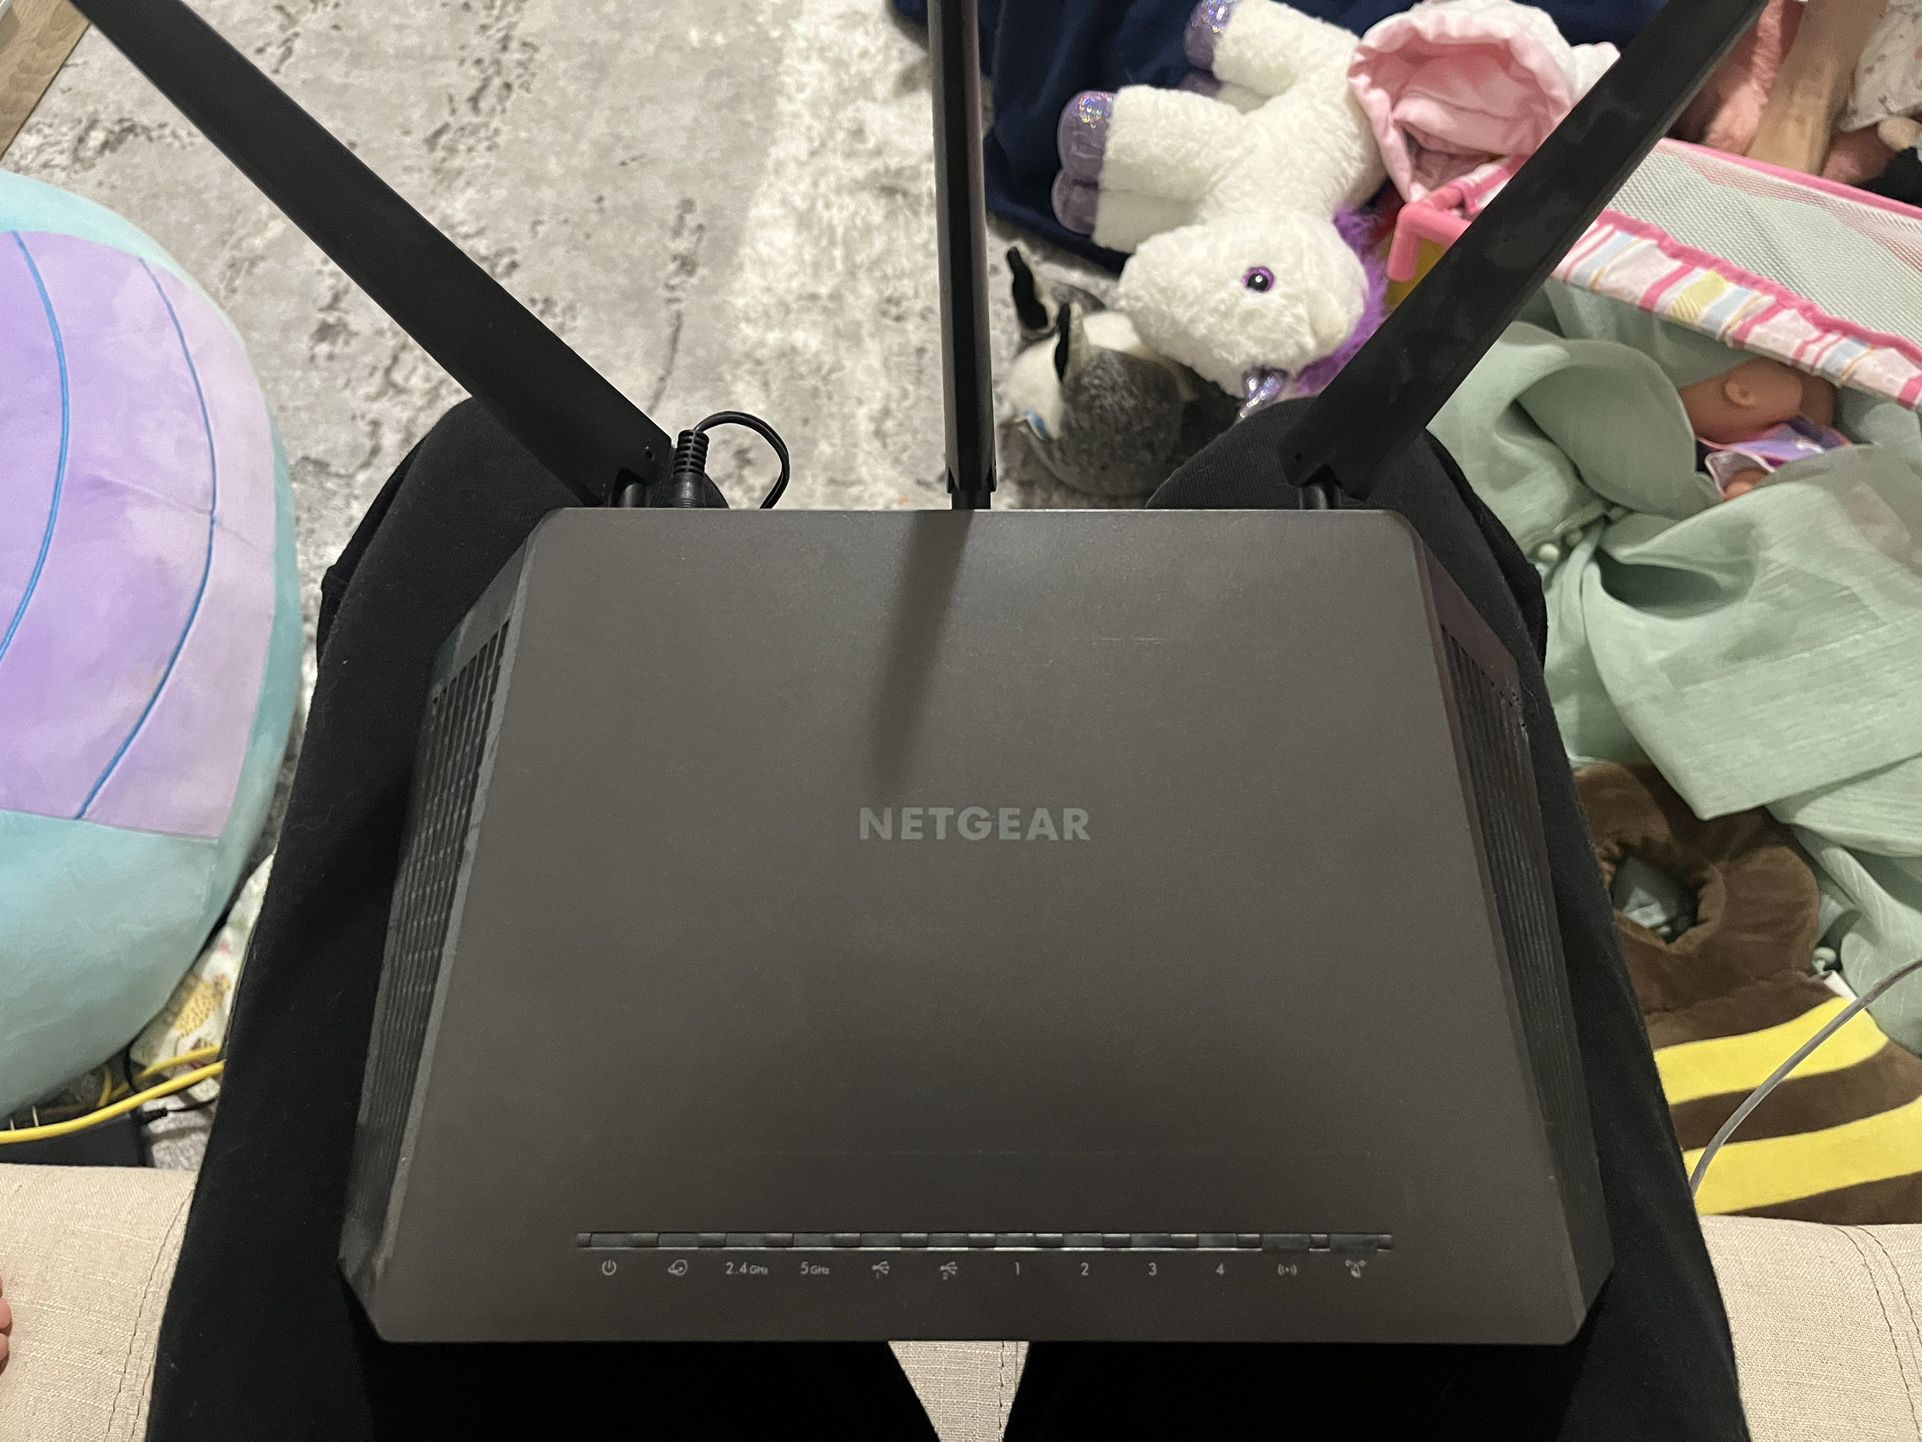 Netgear Nighthawk Router 